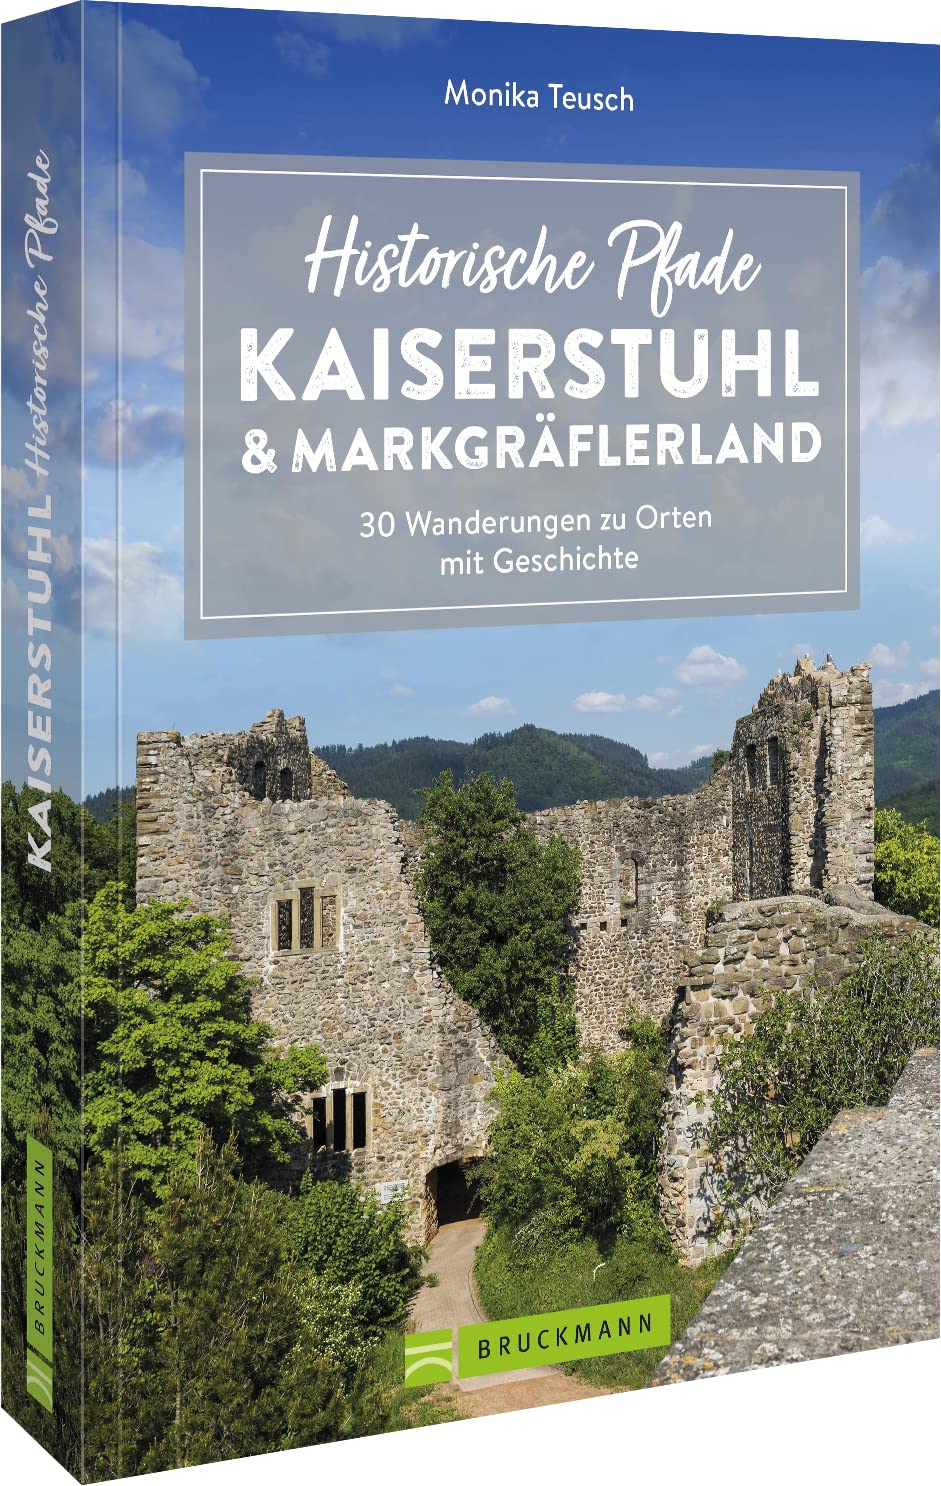 Historische Pfade Kaiserstuhl Markgräflerland (Bruckmann Verlag)